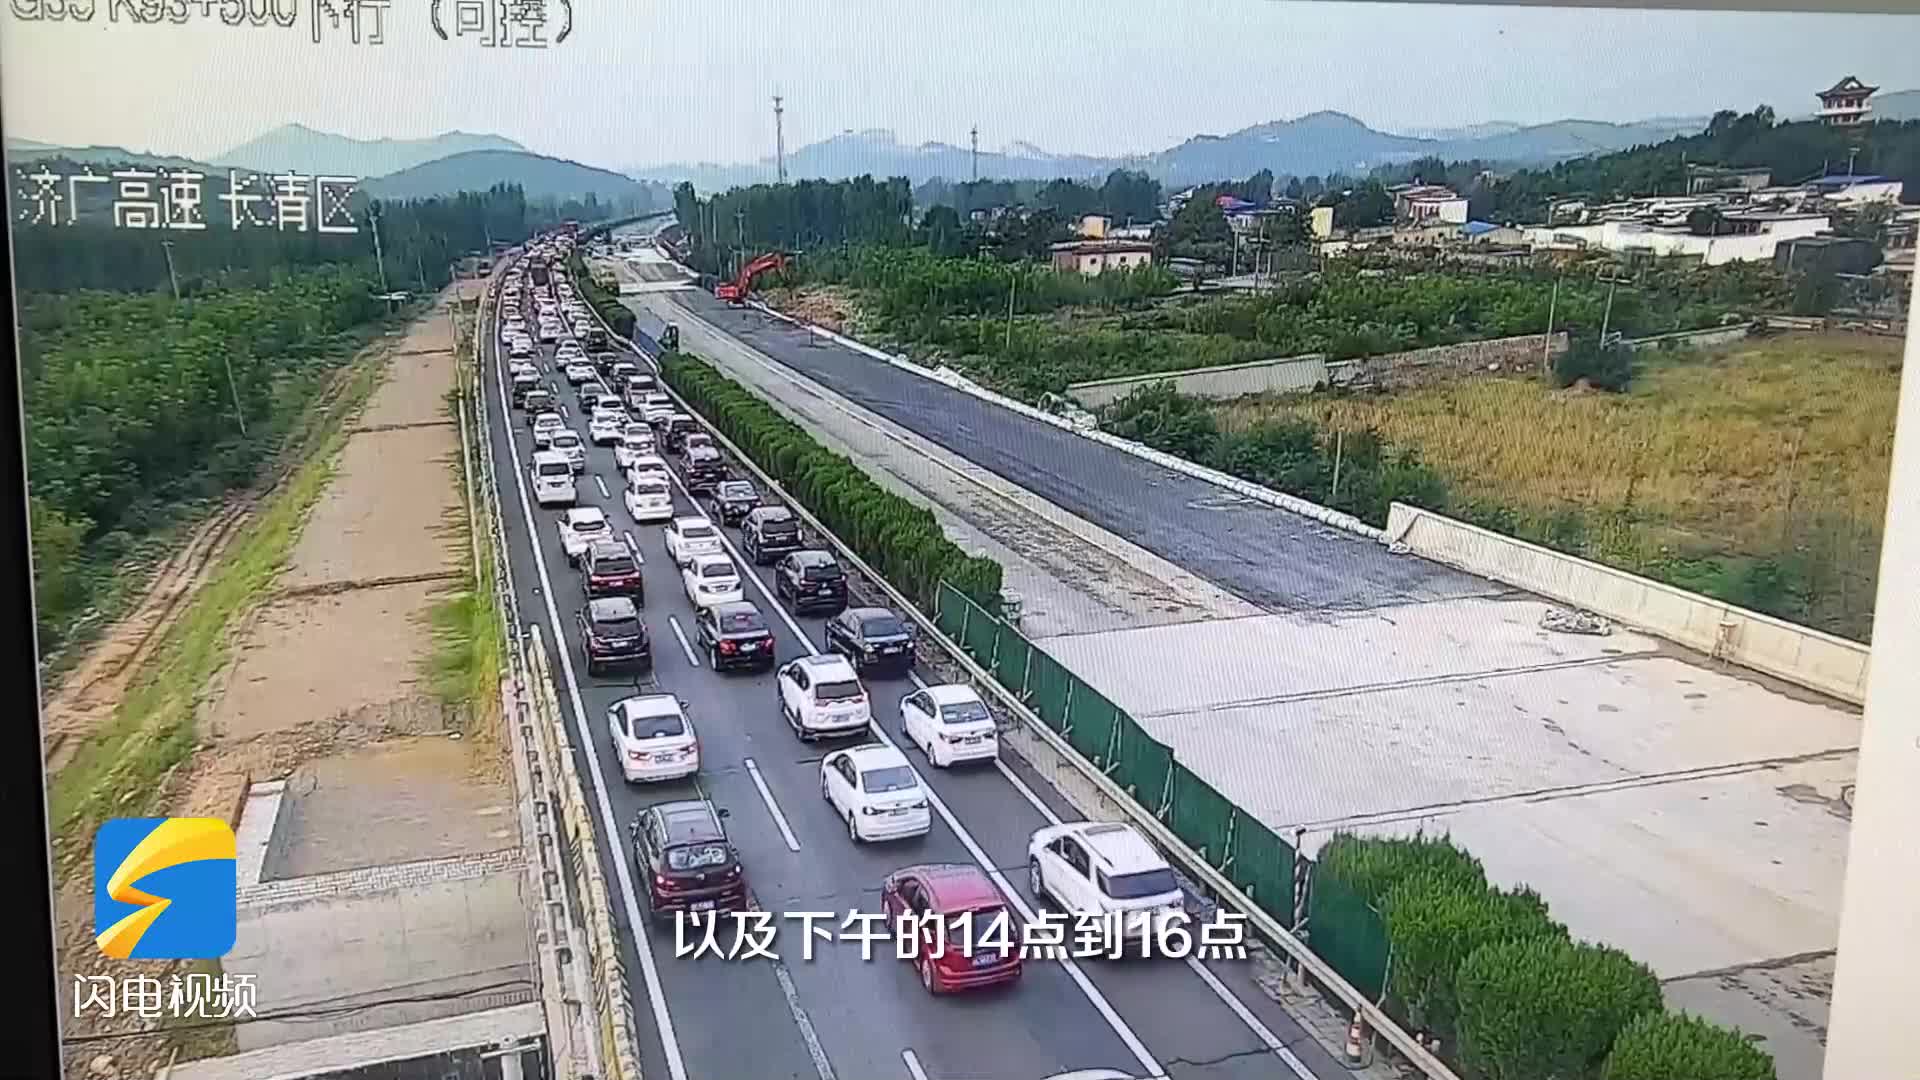 这个时间点是出行高峰！预计假期首日济南高速公路进出站流量最高将达到120万辆